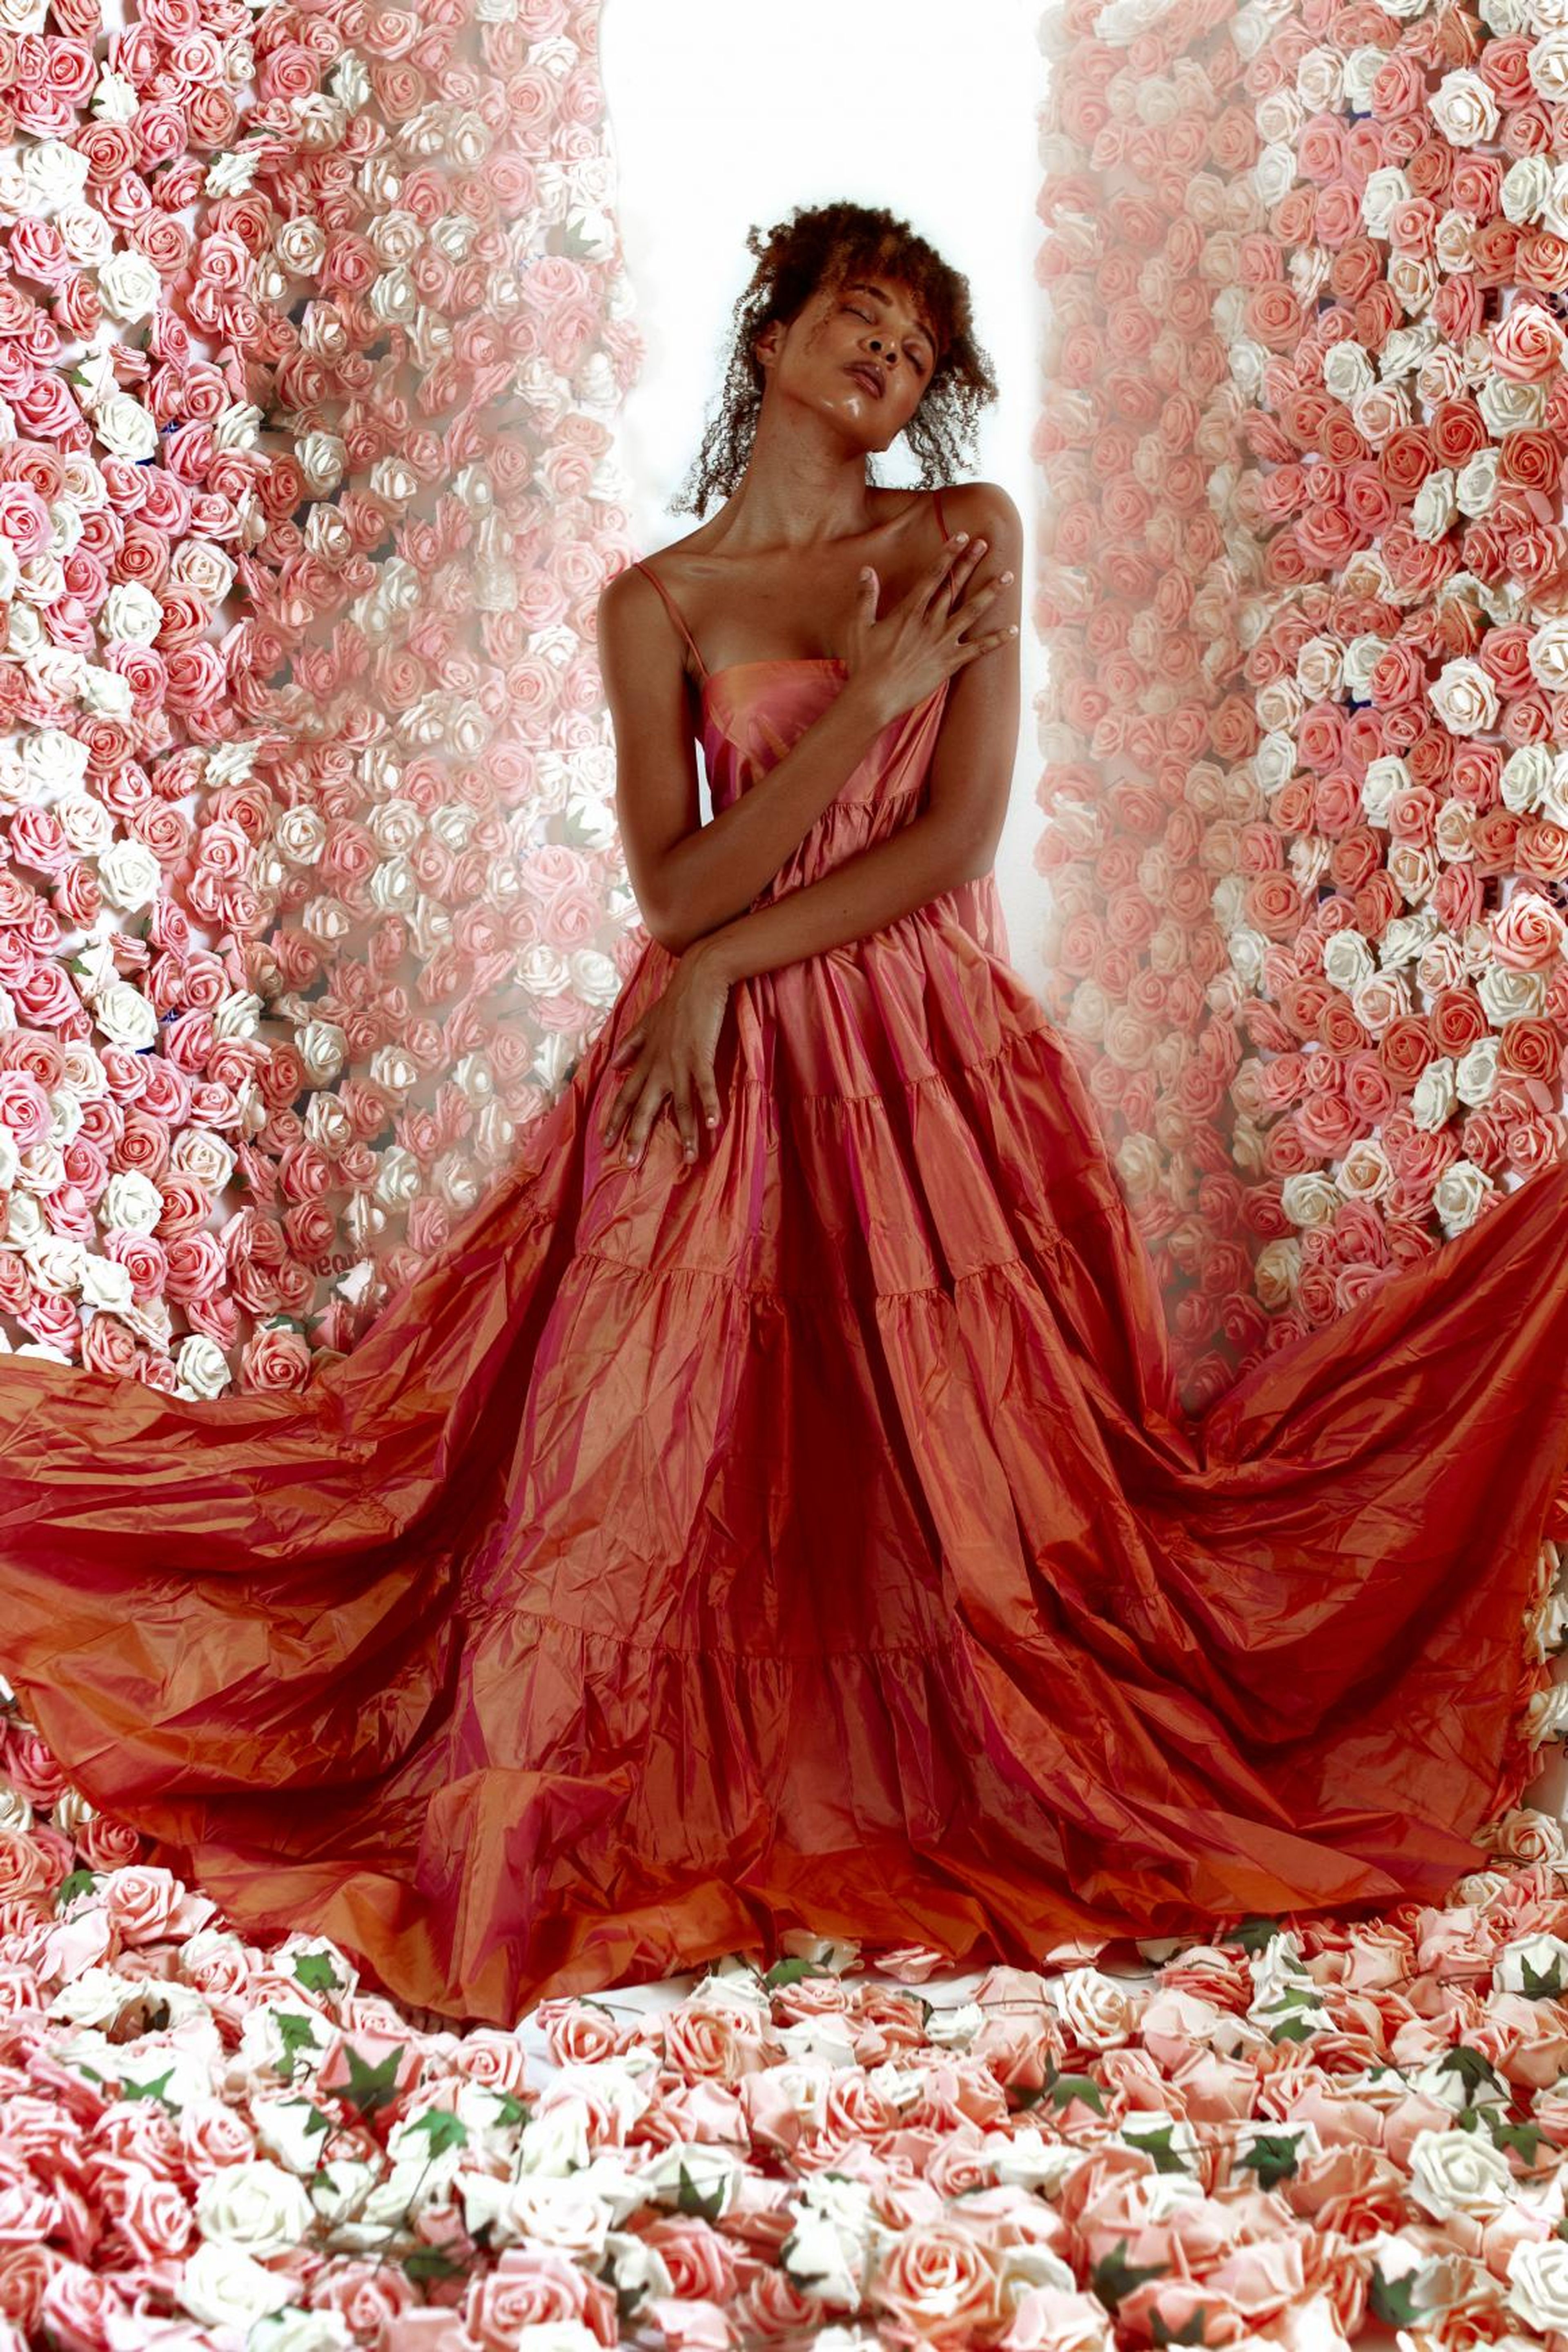 Este impresionante pasillo lleno de rosas fue inspirado por una campaña de Zendaya para Lancôme y Viktor & Rolf's Flowerbomb Enchanted Garden.